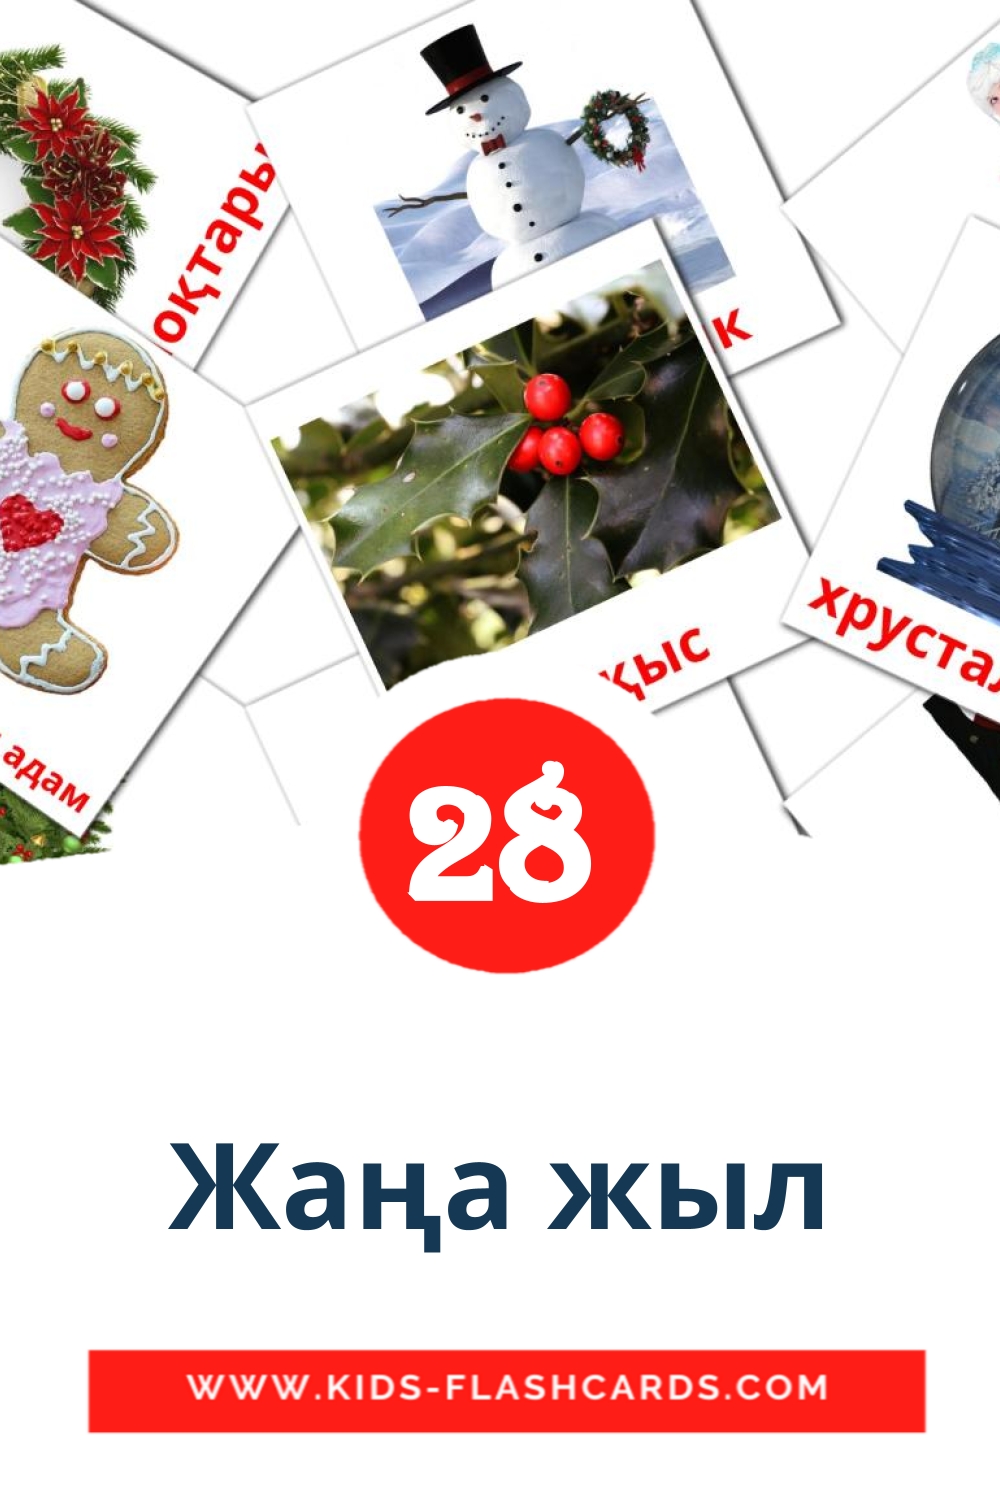 28 Жаңа жыл Bildkarten für den Kindergarten auf kasachisch